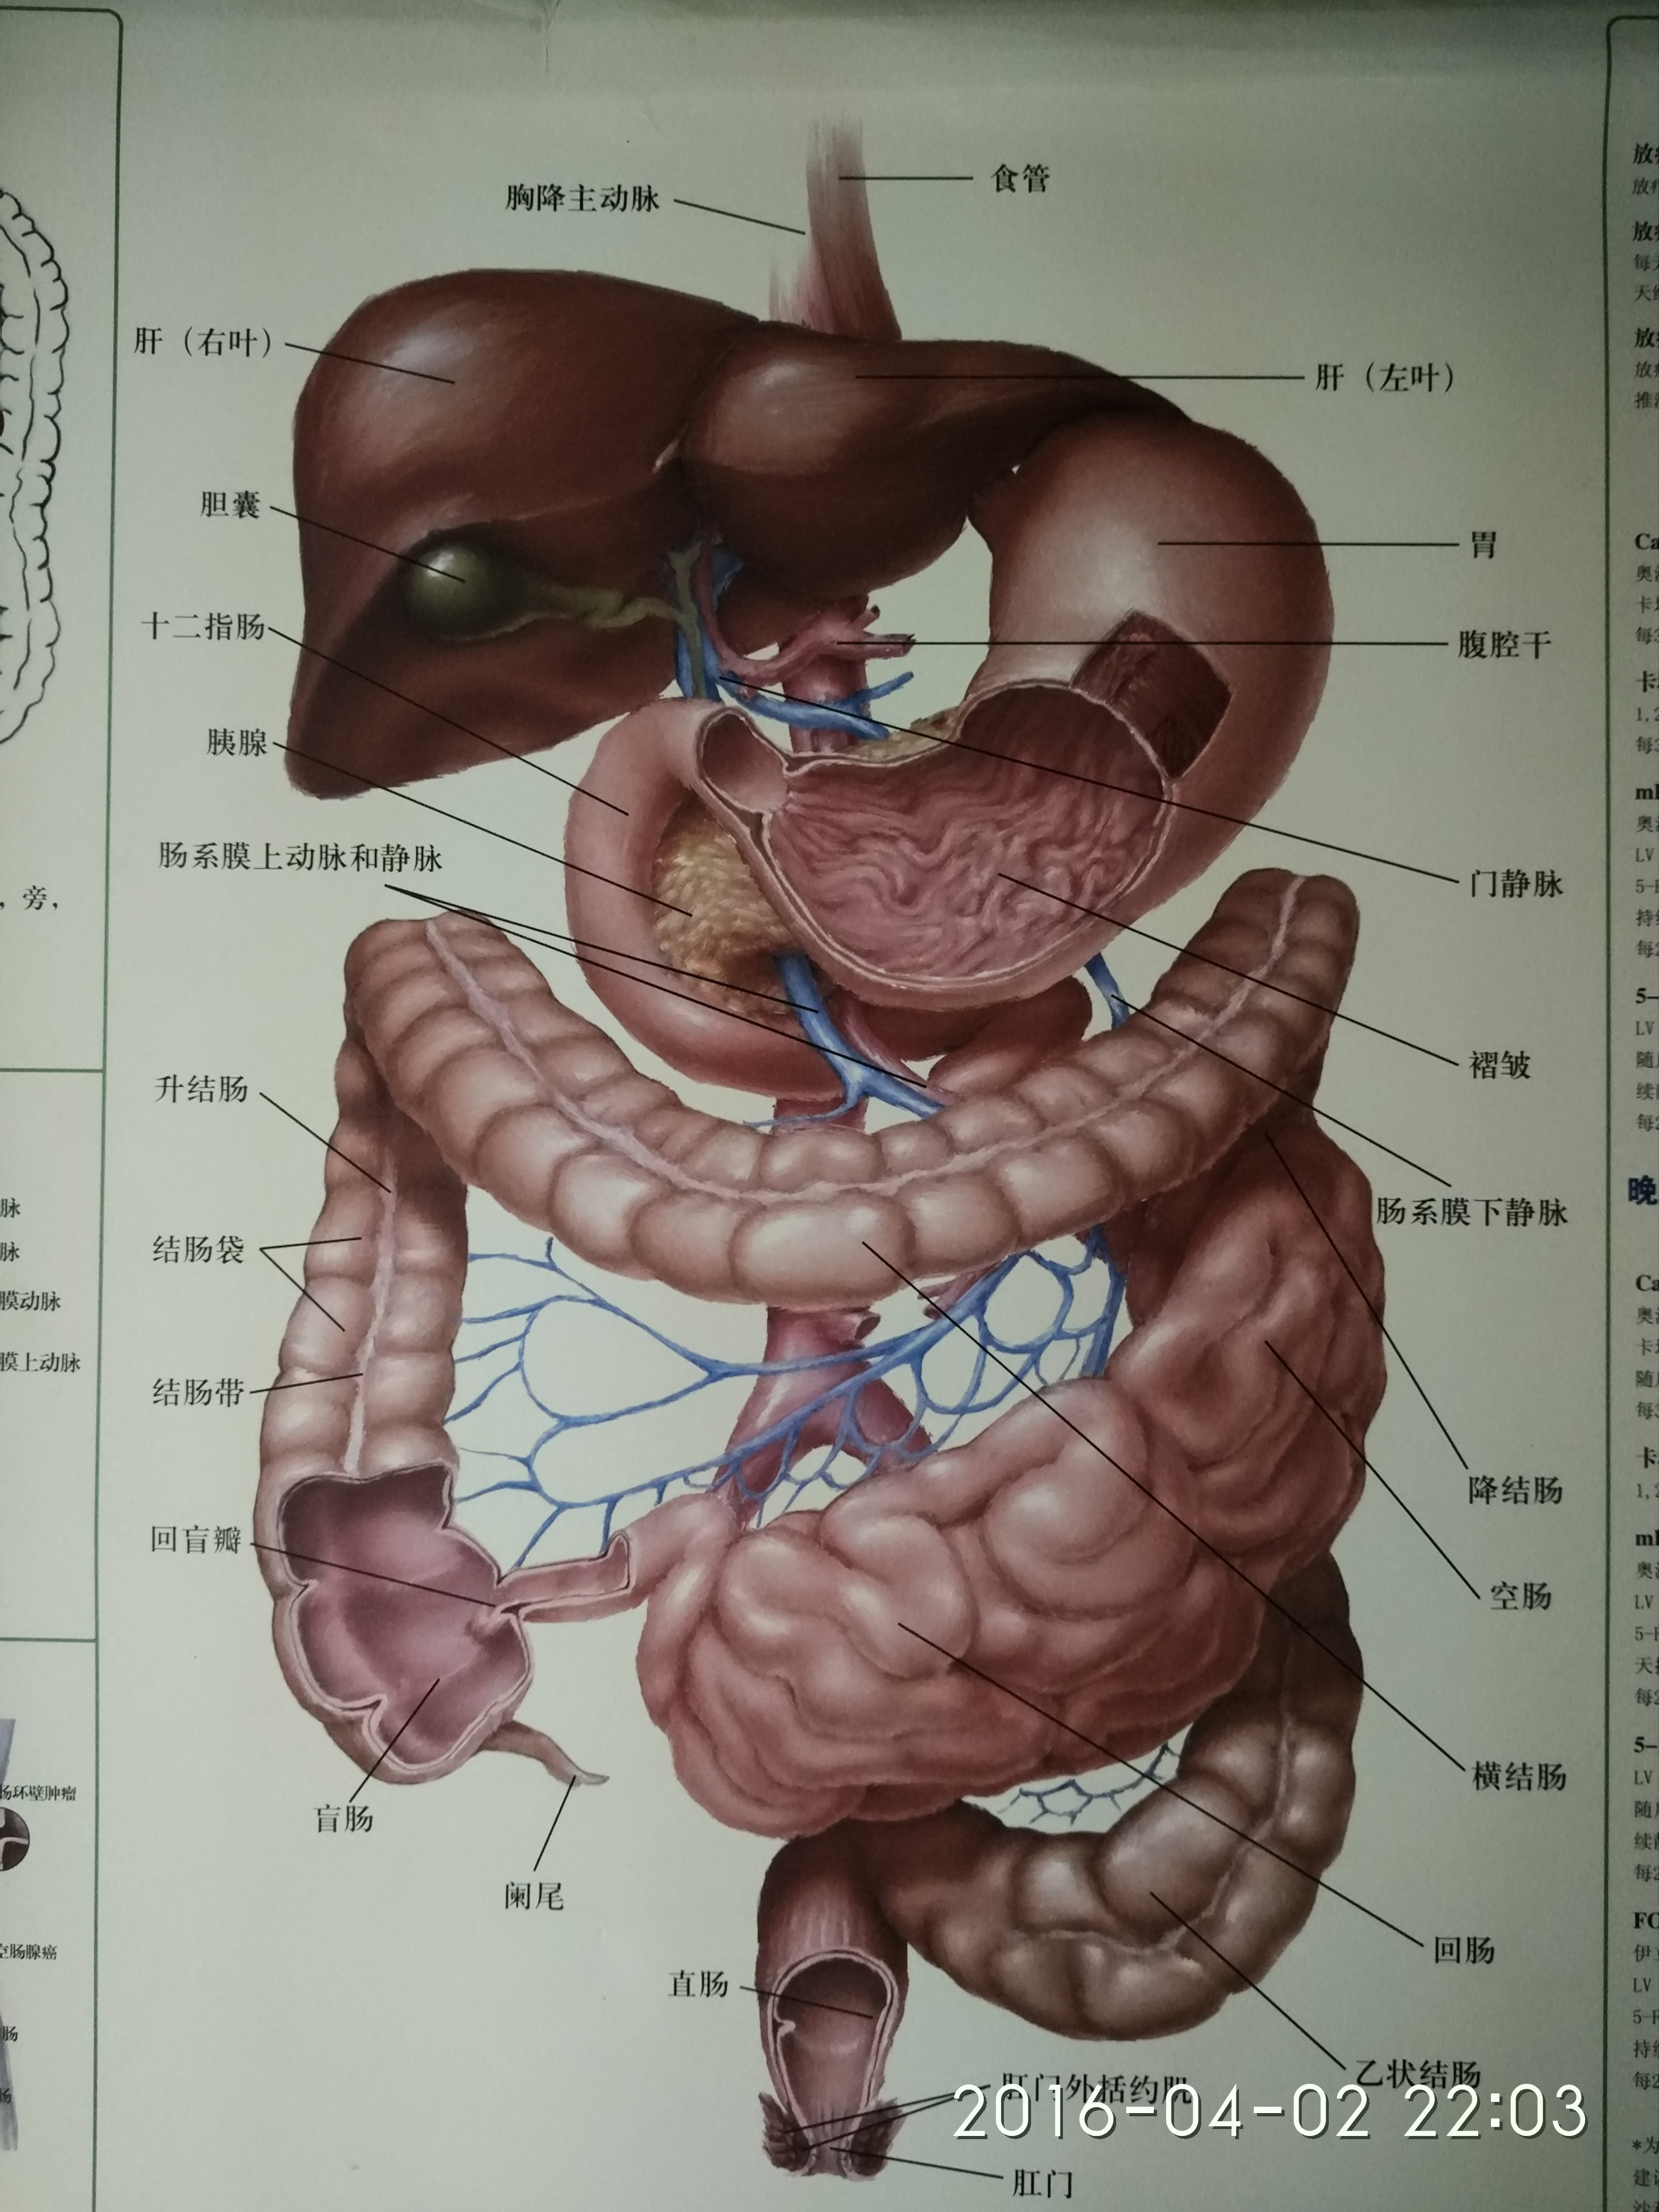 人体腹部器官图示图片